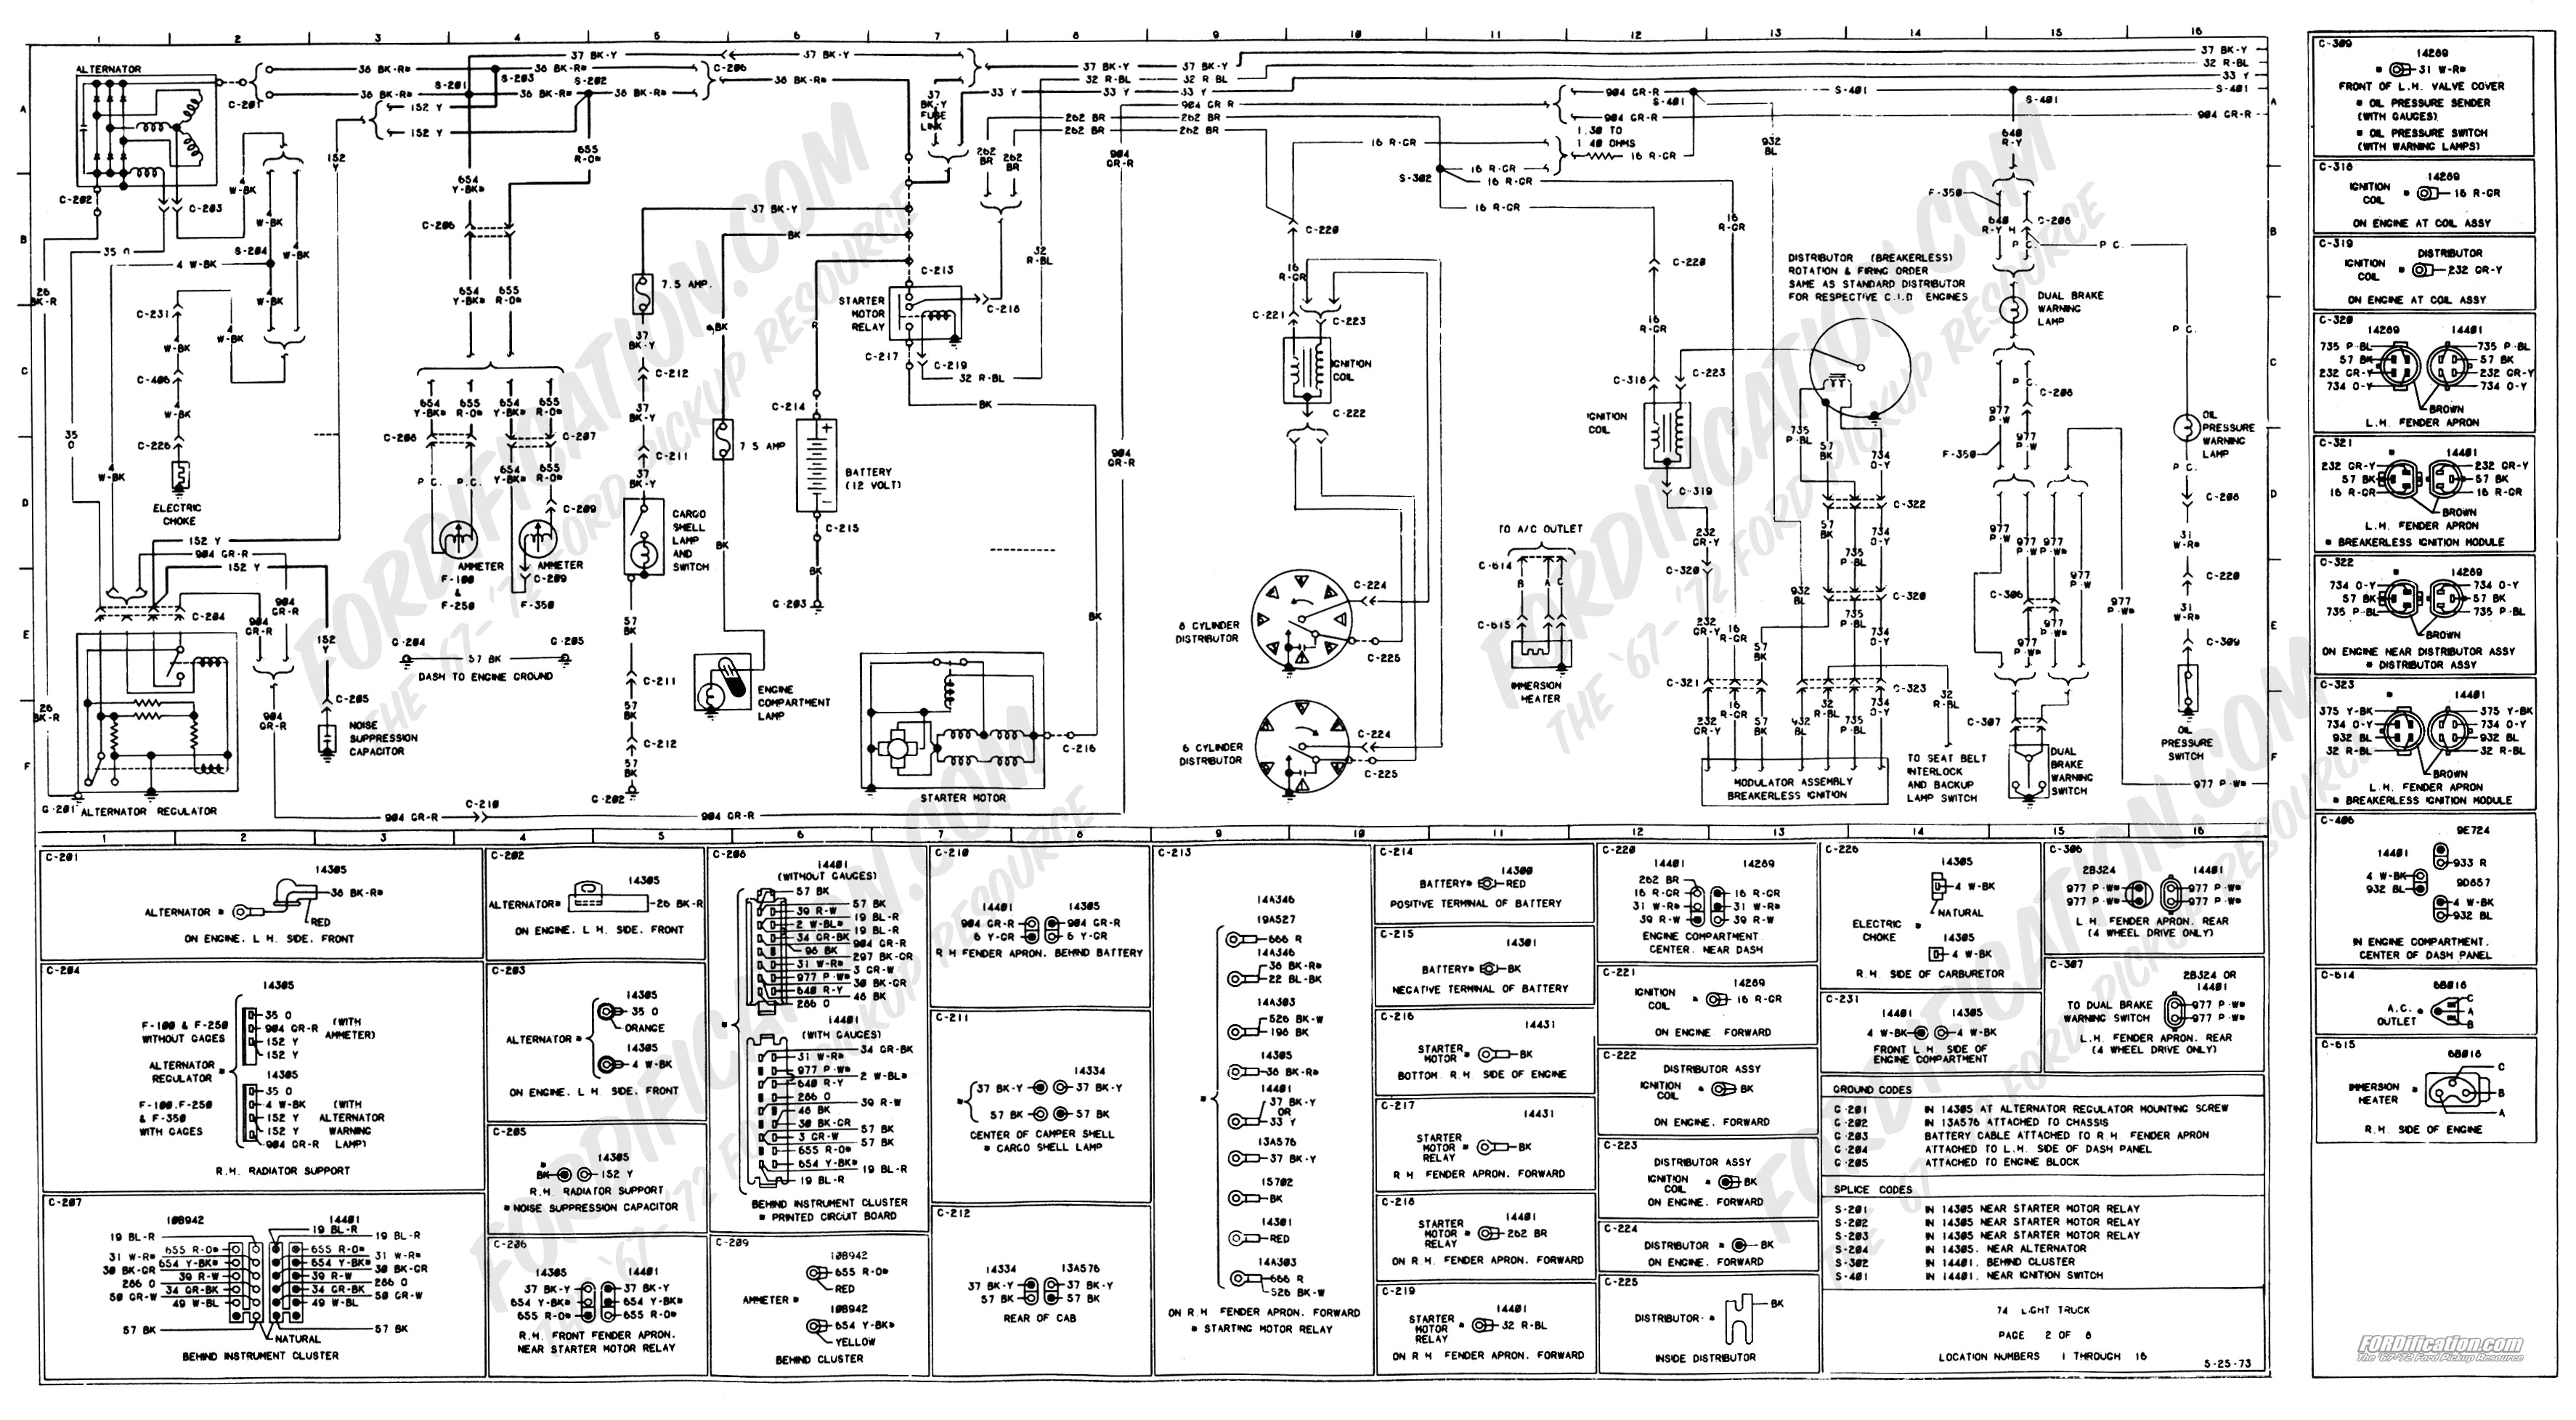 1973 1979 ford truck wiring diagrams schematics fordification net 1979 ford radio wiring diagram 1979 f350 wiring diagram